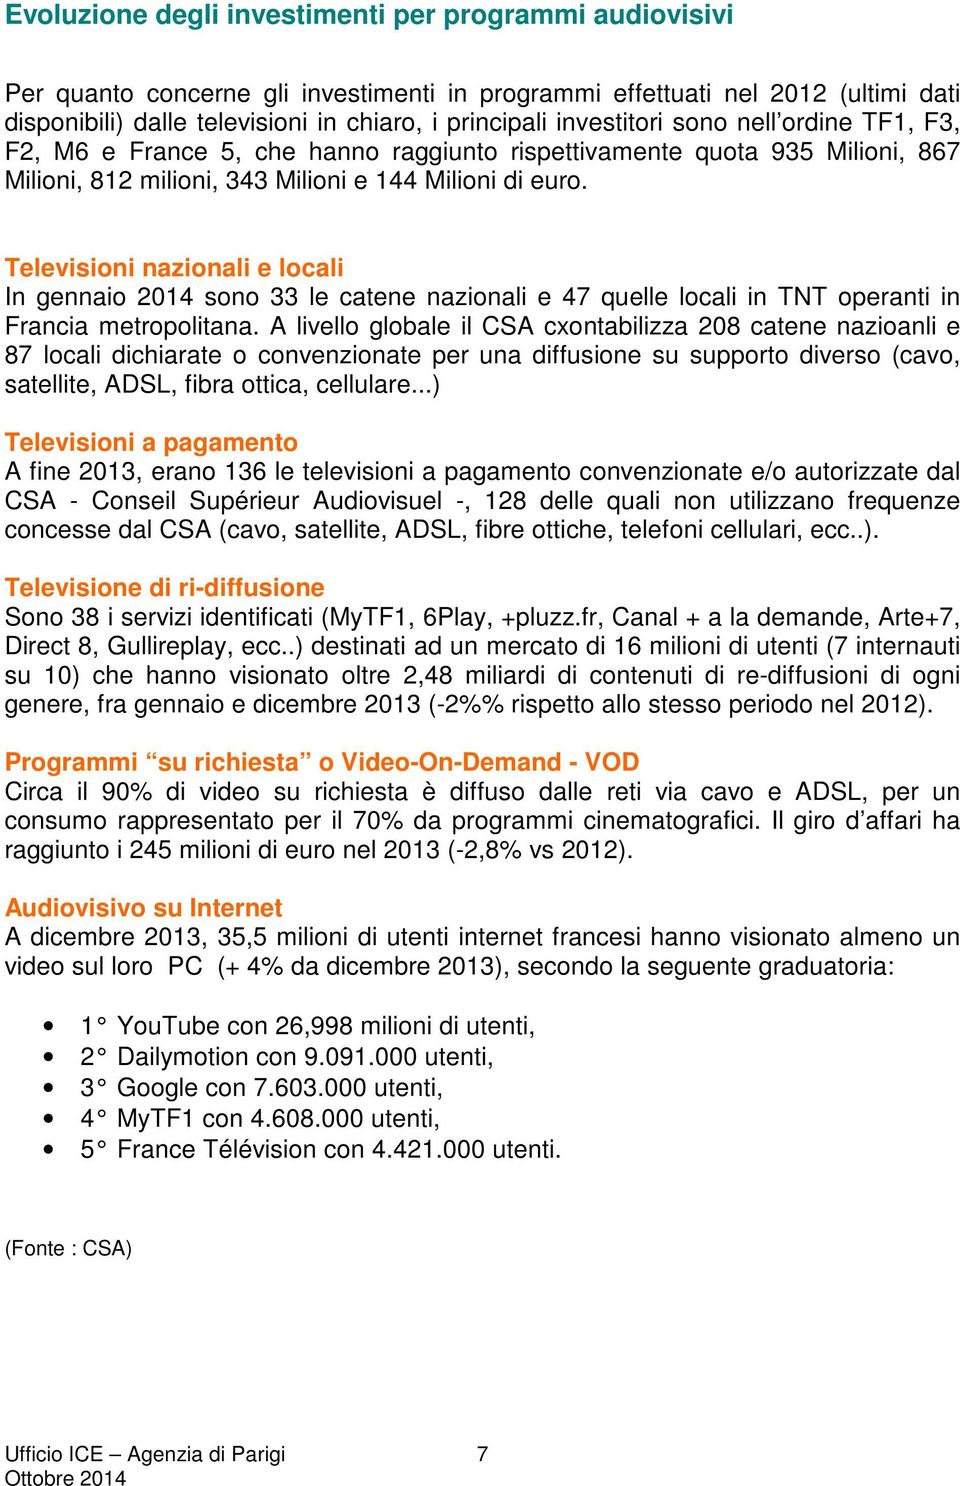 Televisioni nazionali e locali In gennaio 2014 sono 33 le catene nazionali e 47 quelle locali in TNT operanti in Francia metropolitana.